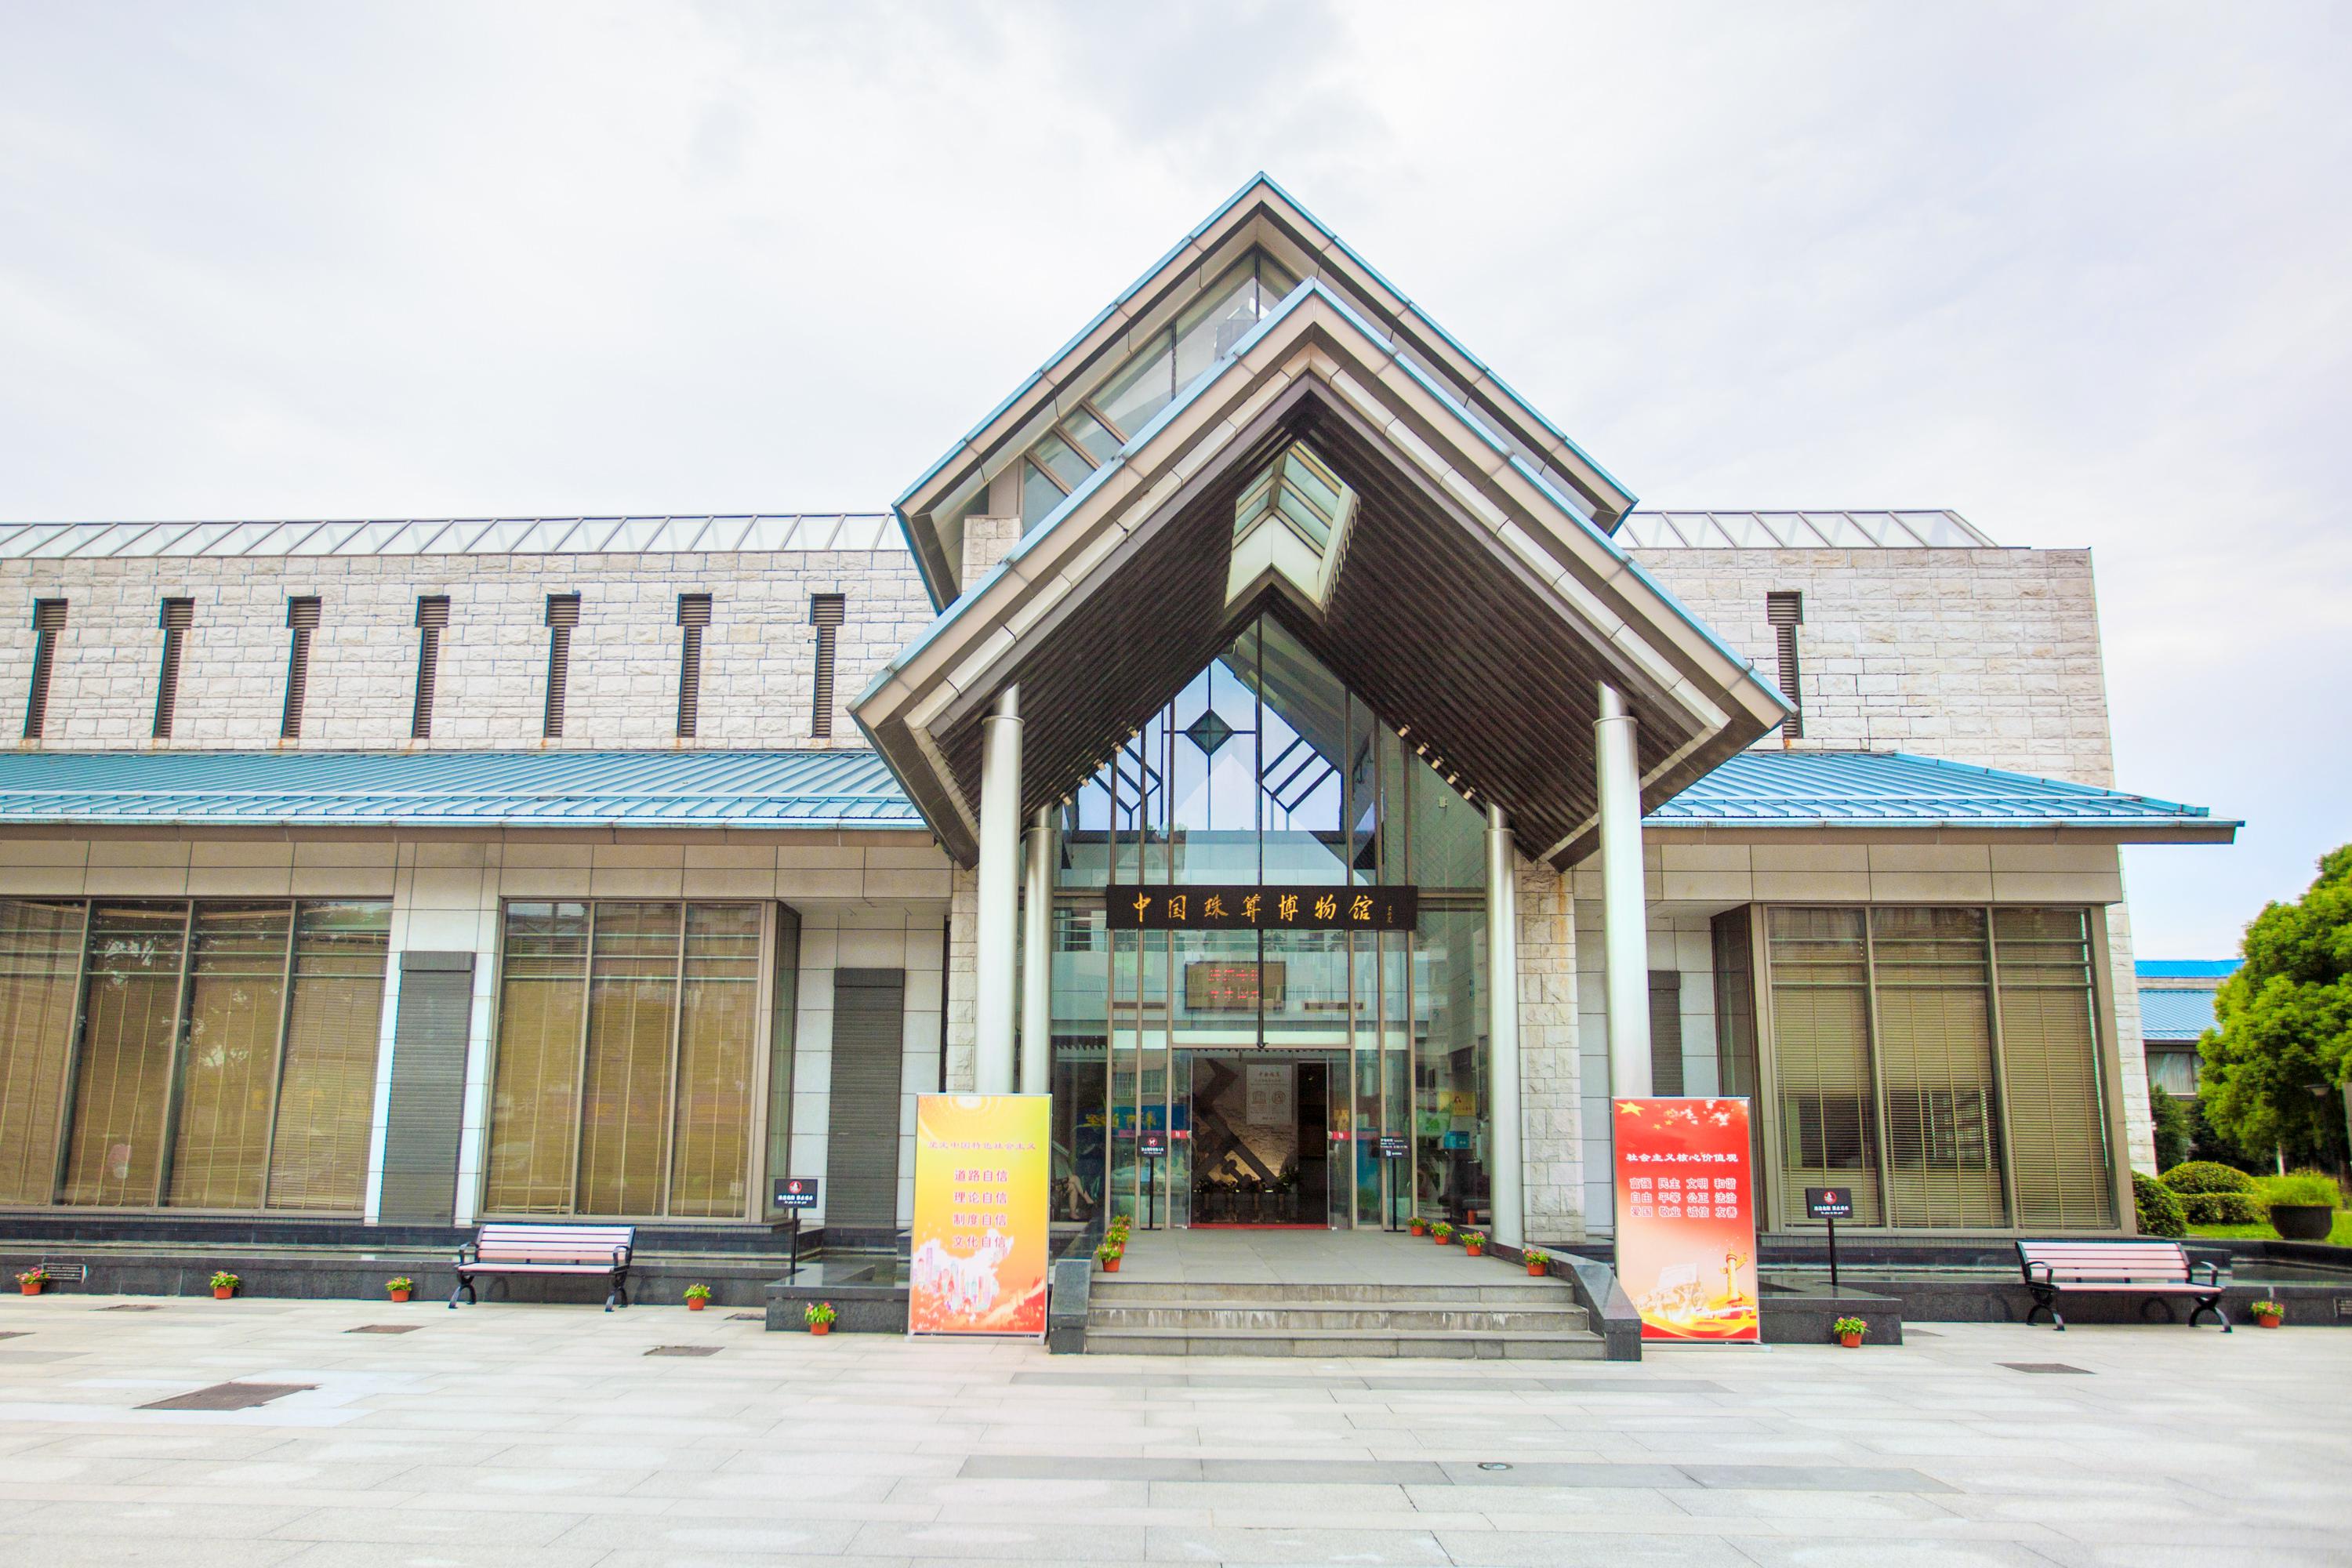 中国珠算博物馆